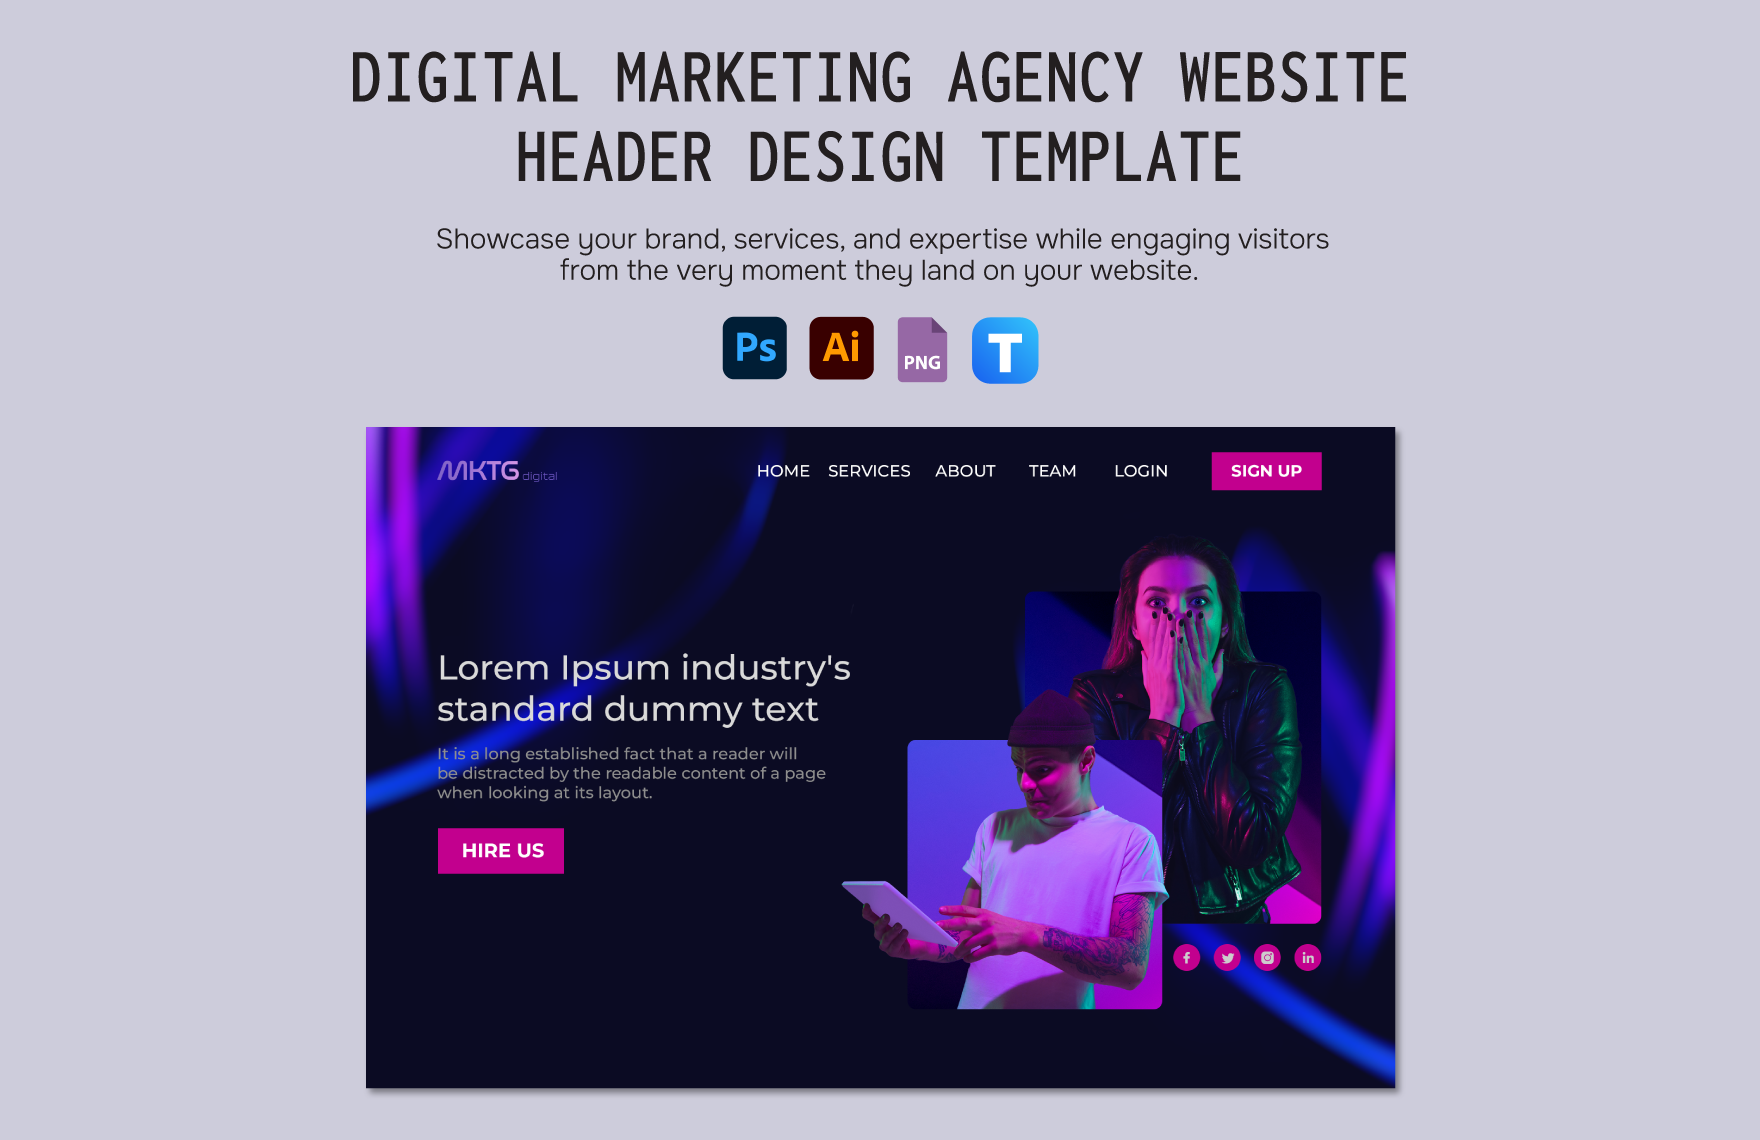 Digital Marketing Agency Website Header Design Template in Illustrator, PSD